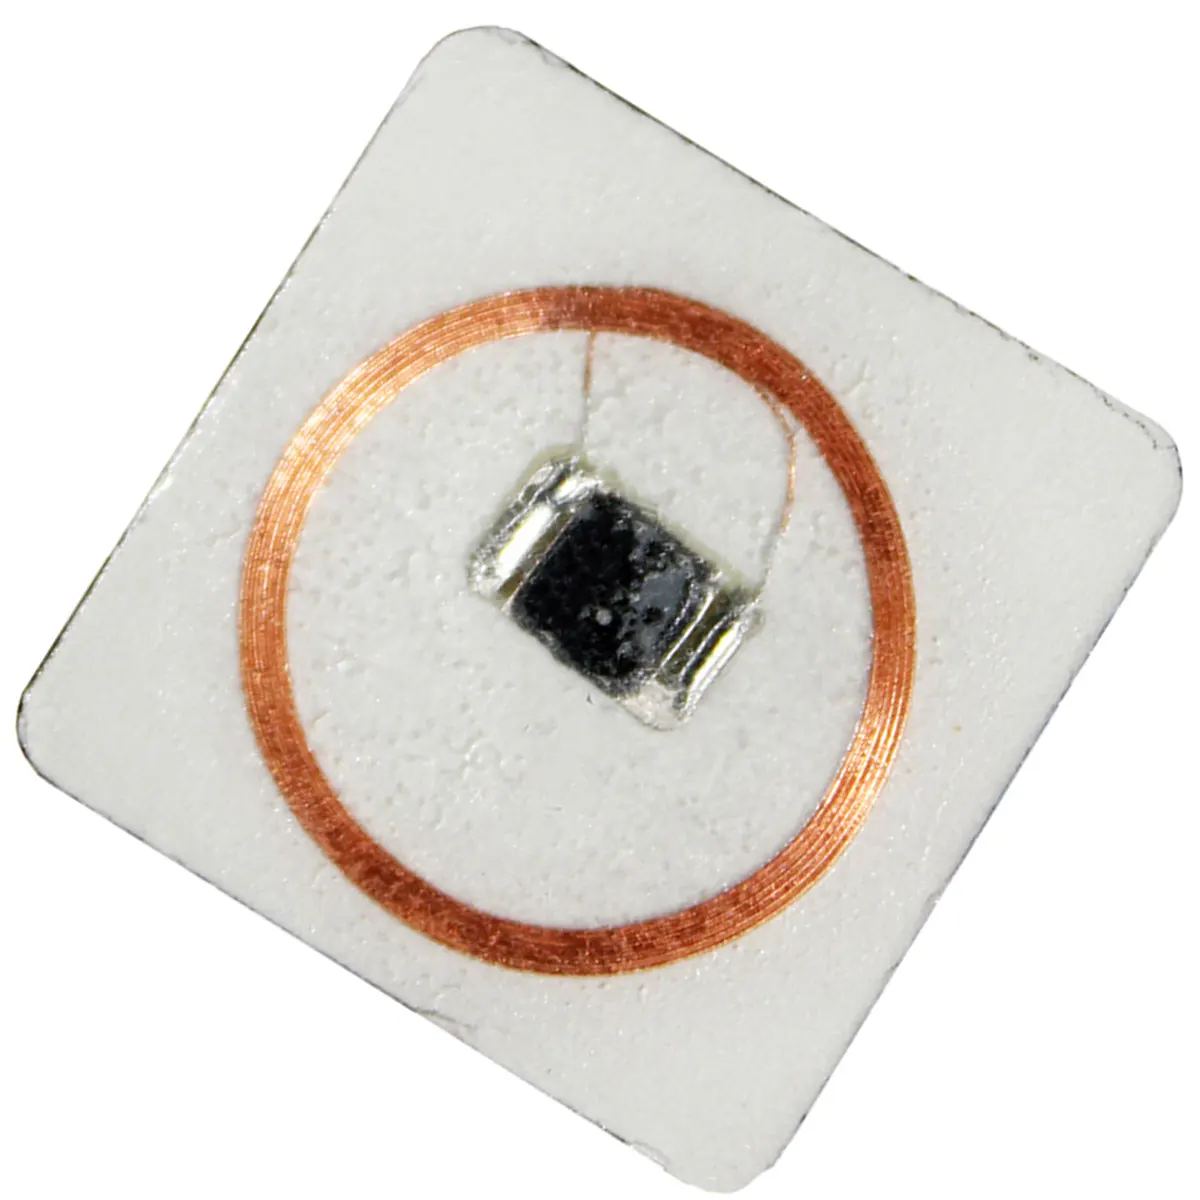 Chips für riso master chips RS-500 büro maschine verbrauchs materialien